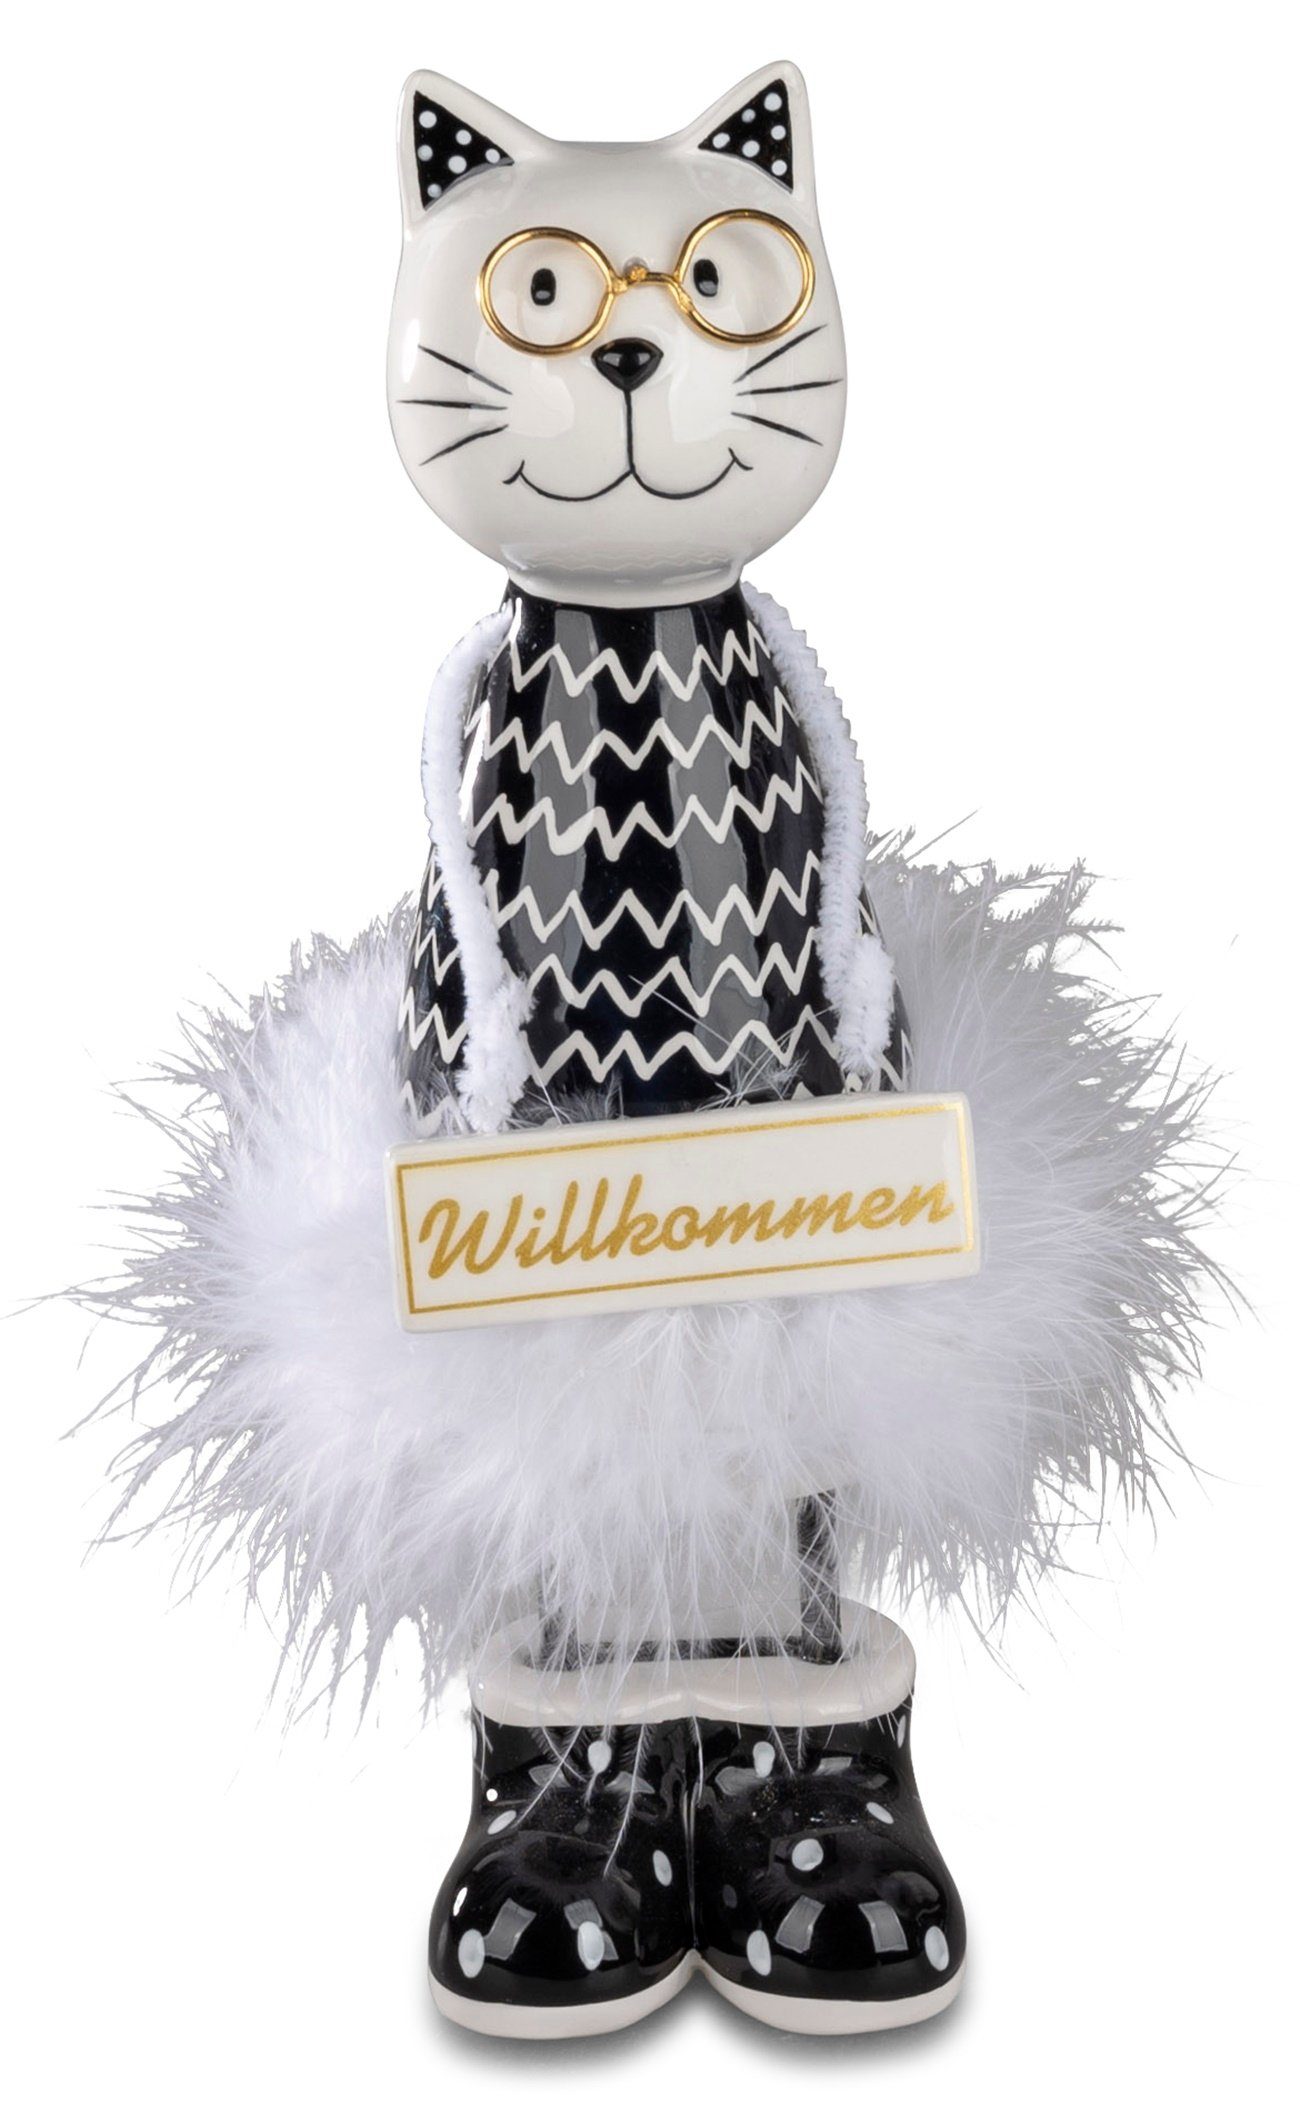 28cm Willkommens-Schild Dekofigur weiß schwarz dekojohnson Deko-Katze